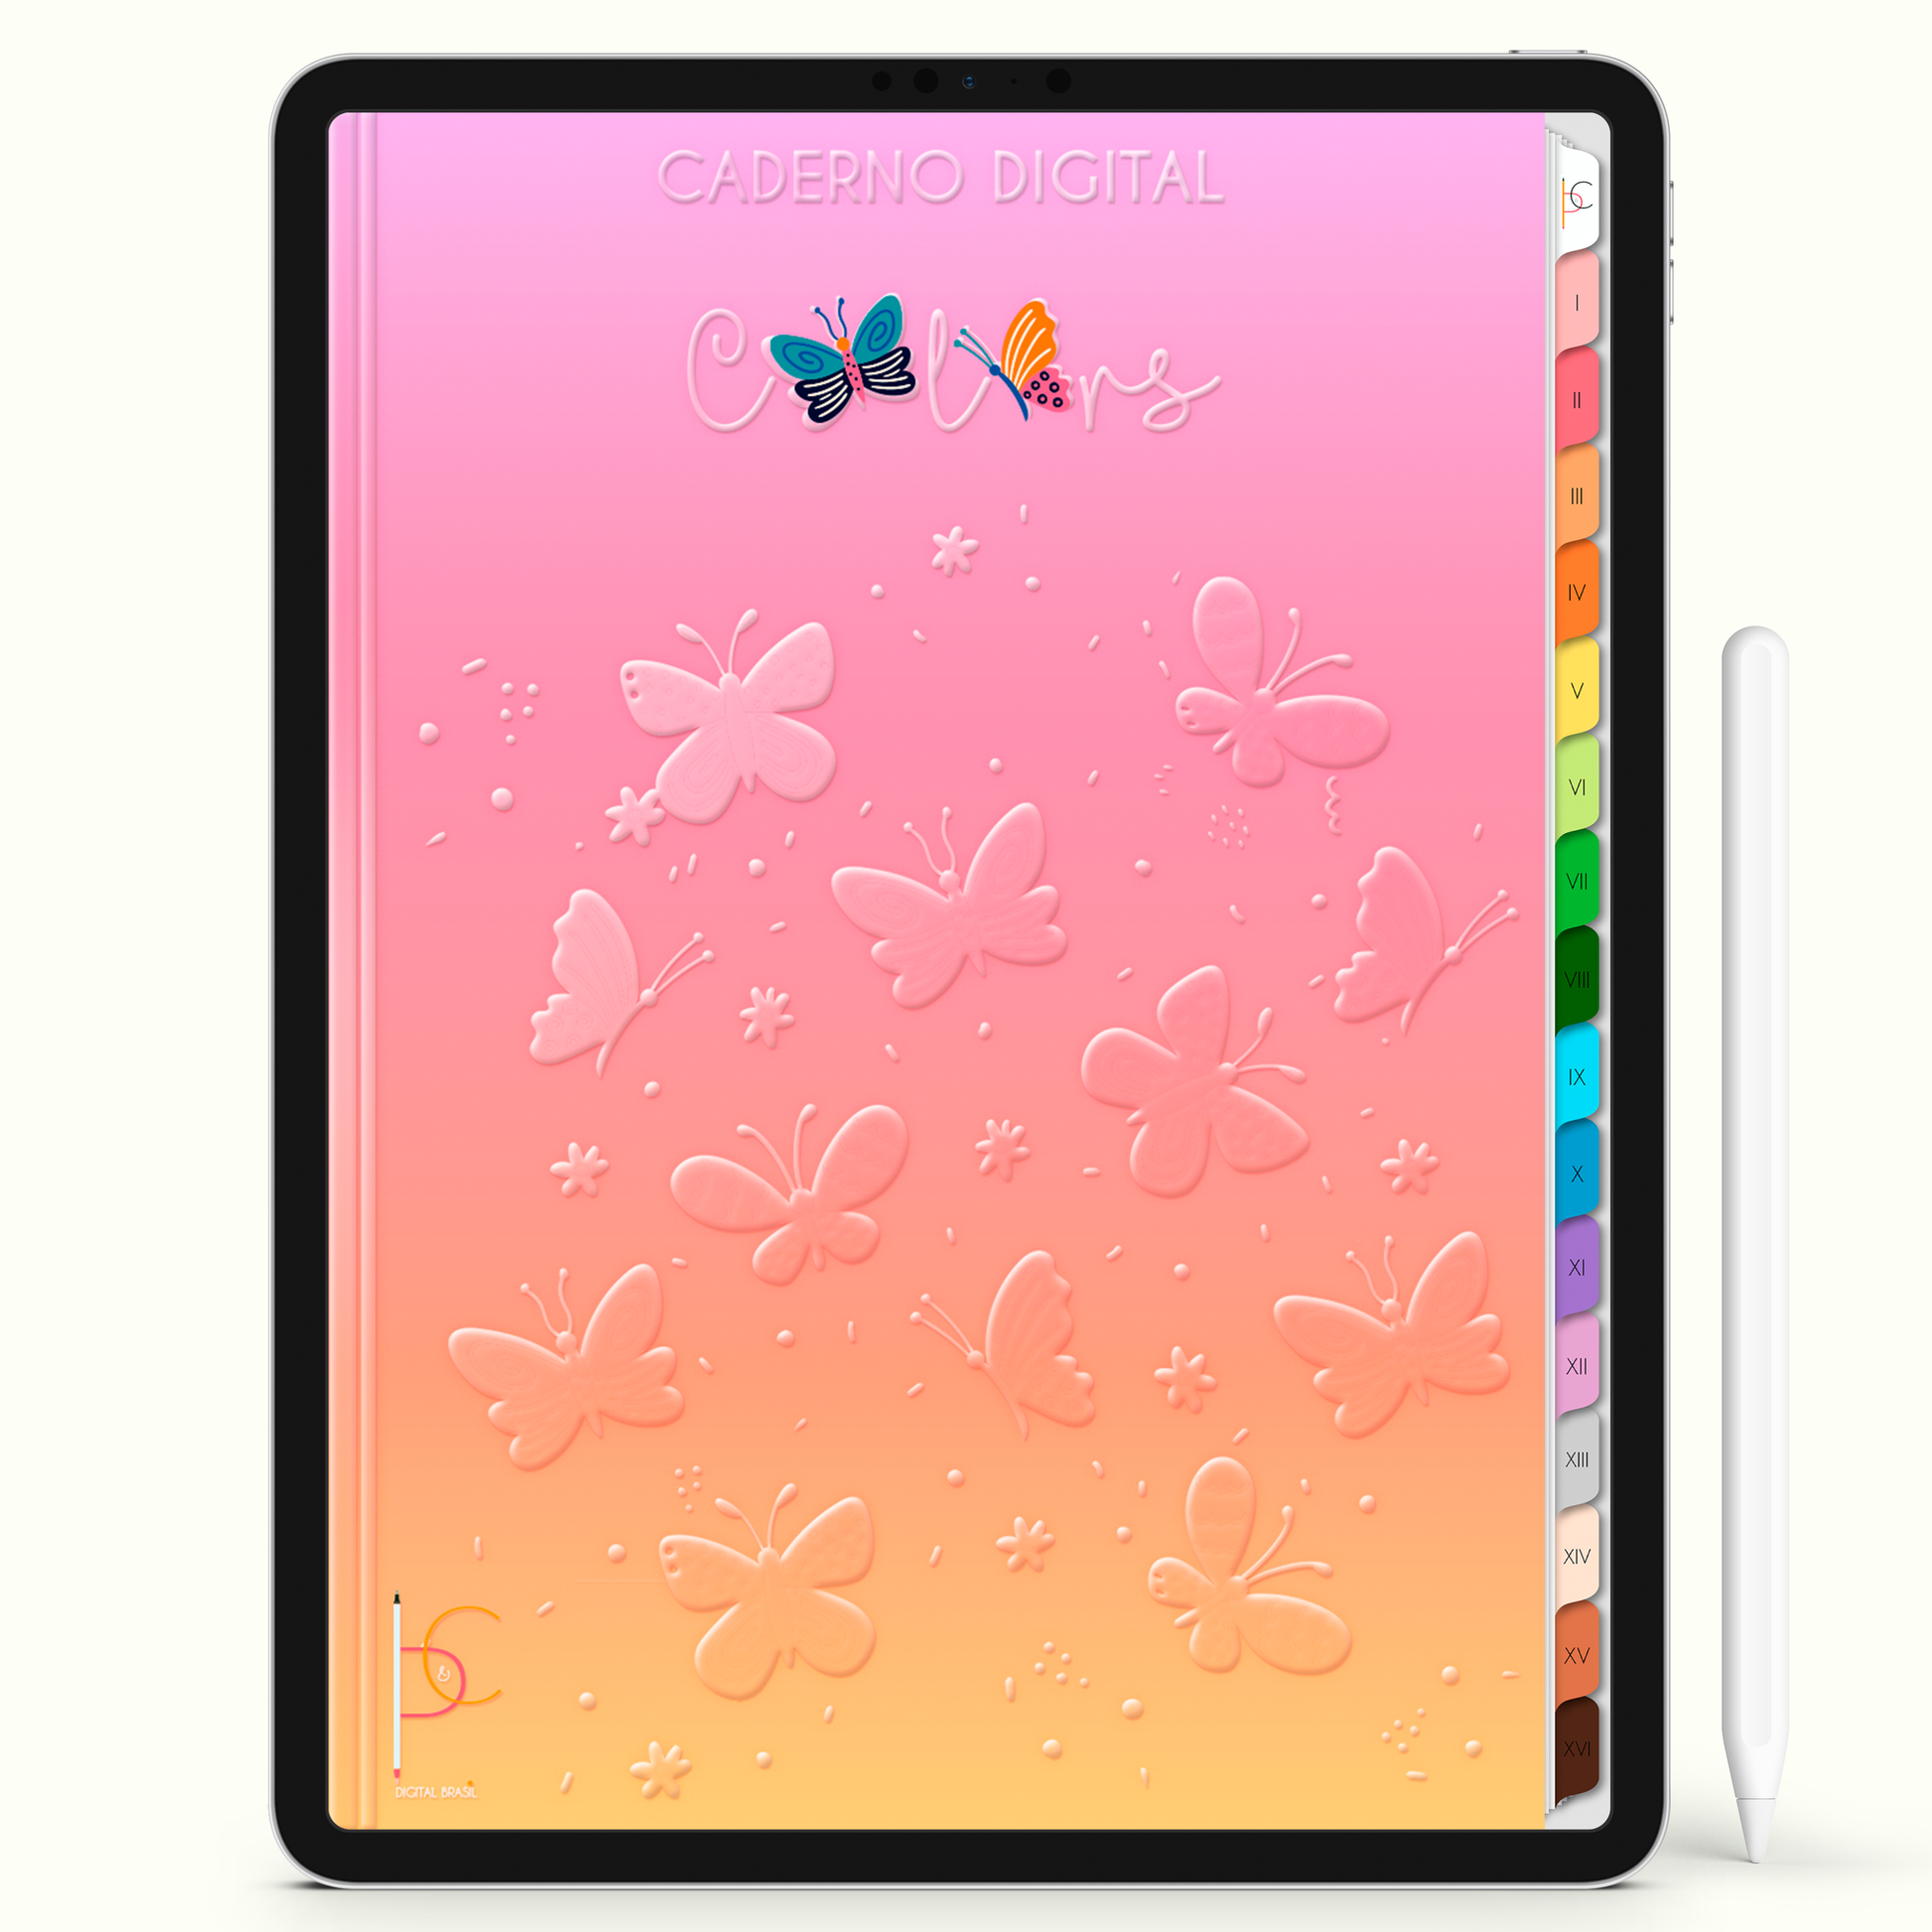 Caderno Digital Colors Entre Flores e Borboletas 16 Matérias • Para iPad e Tablet Android • Download instantâneo • Sustentável